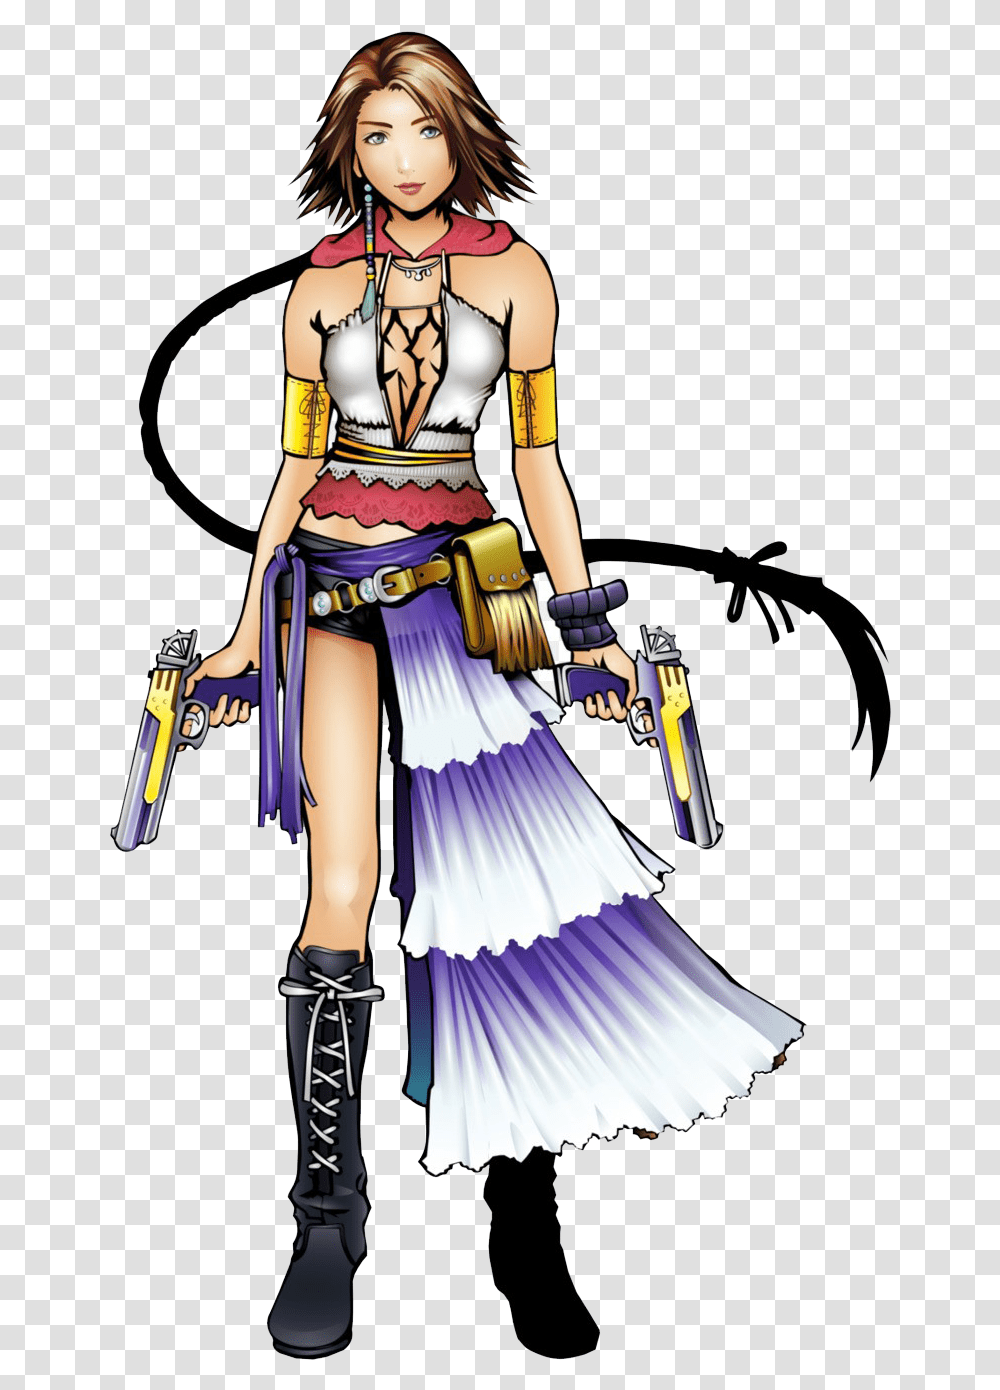 Yuna Background Final Fantasy X 2 Concept Art, Person, Human, Comics, Book Transparent Png